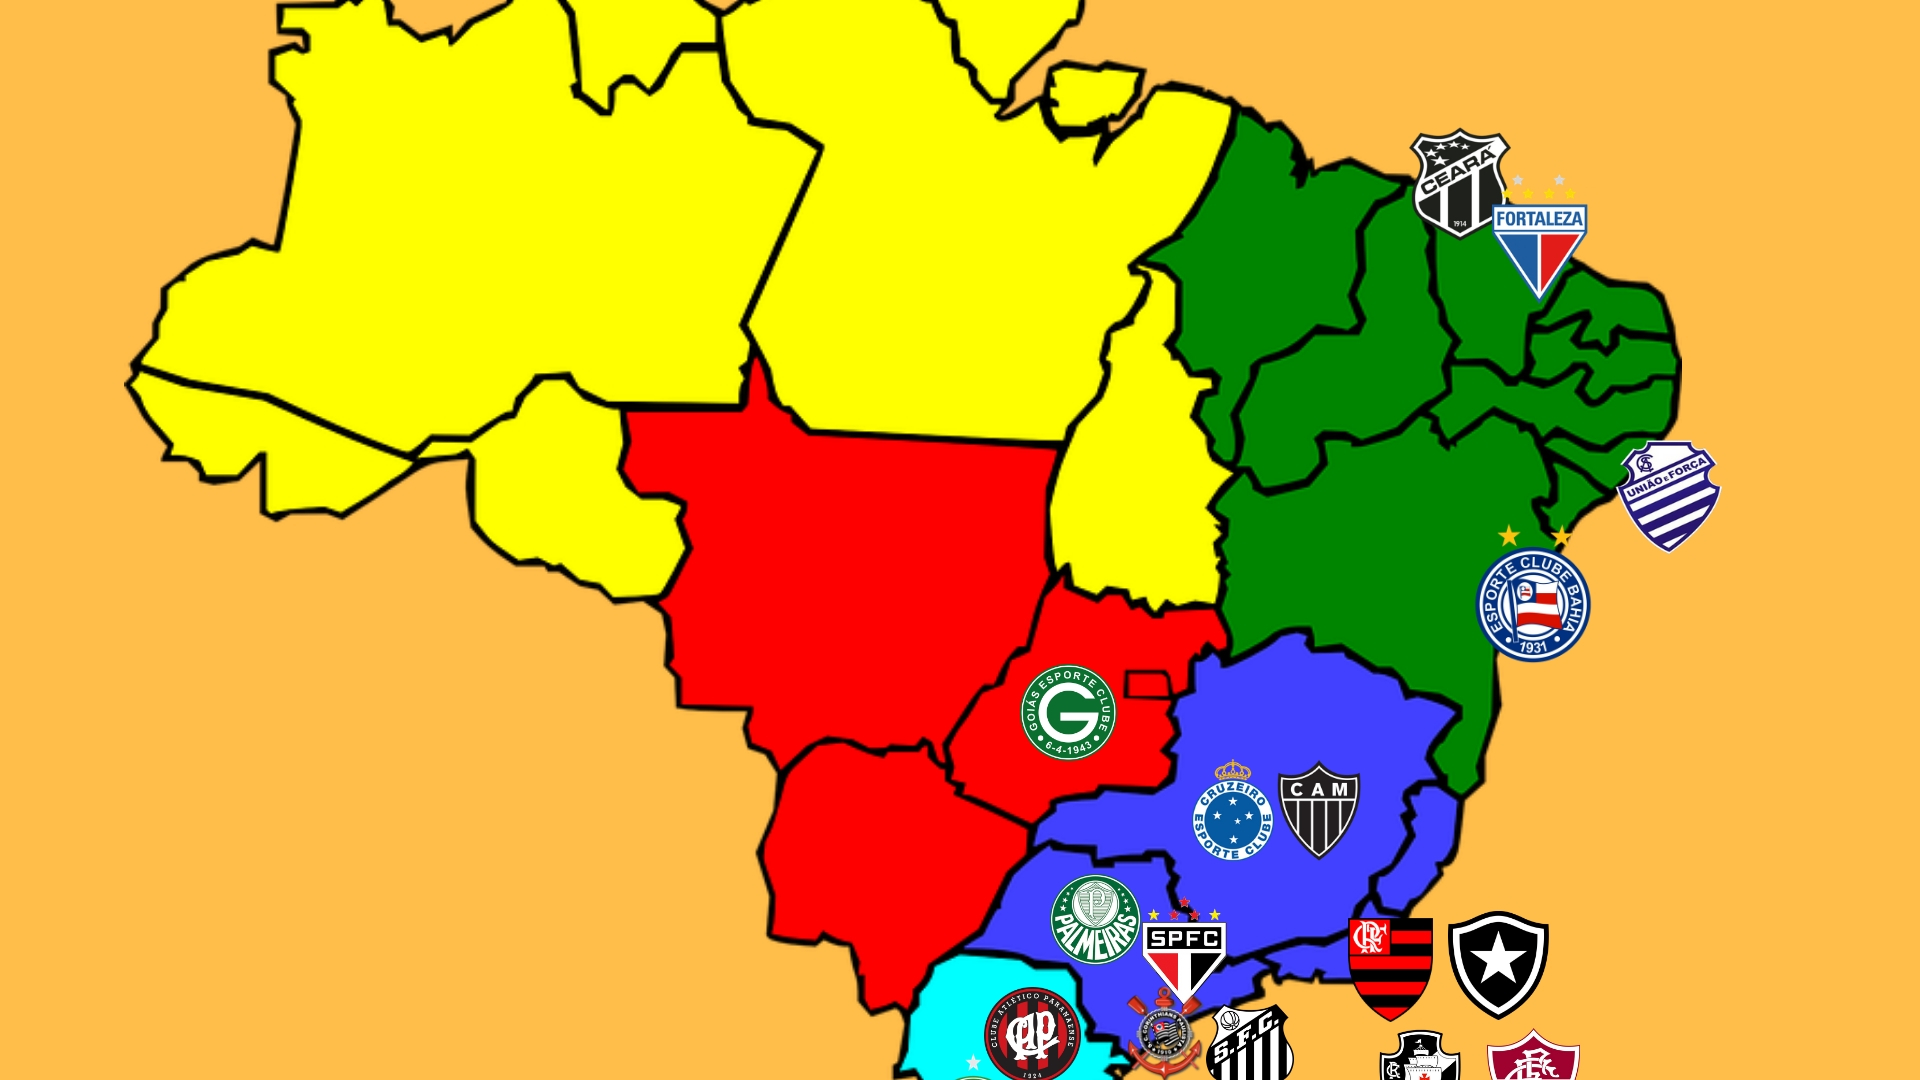 Coloquei os times da Série B e da Série C de 2019 num mapa : r/futebol